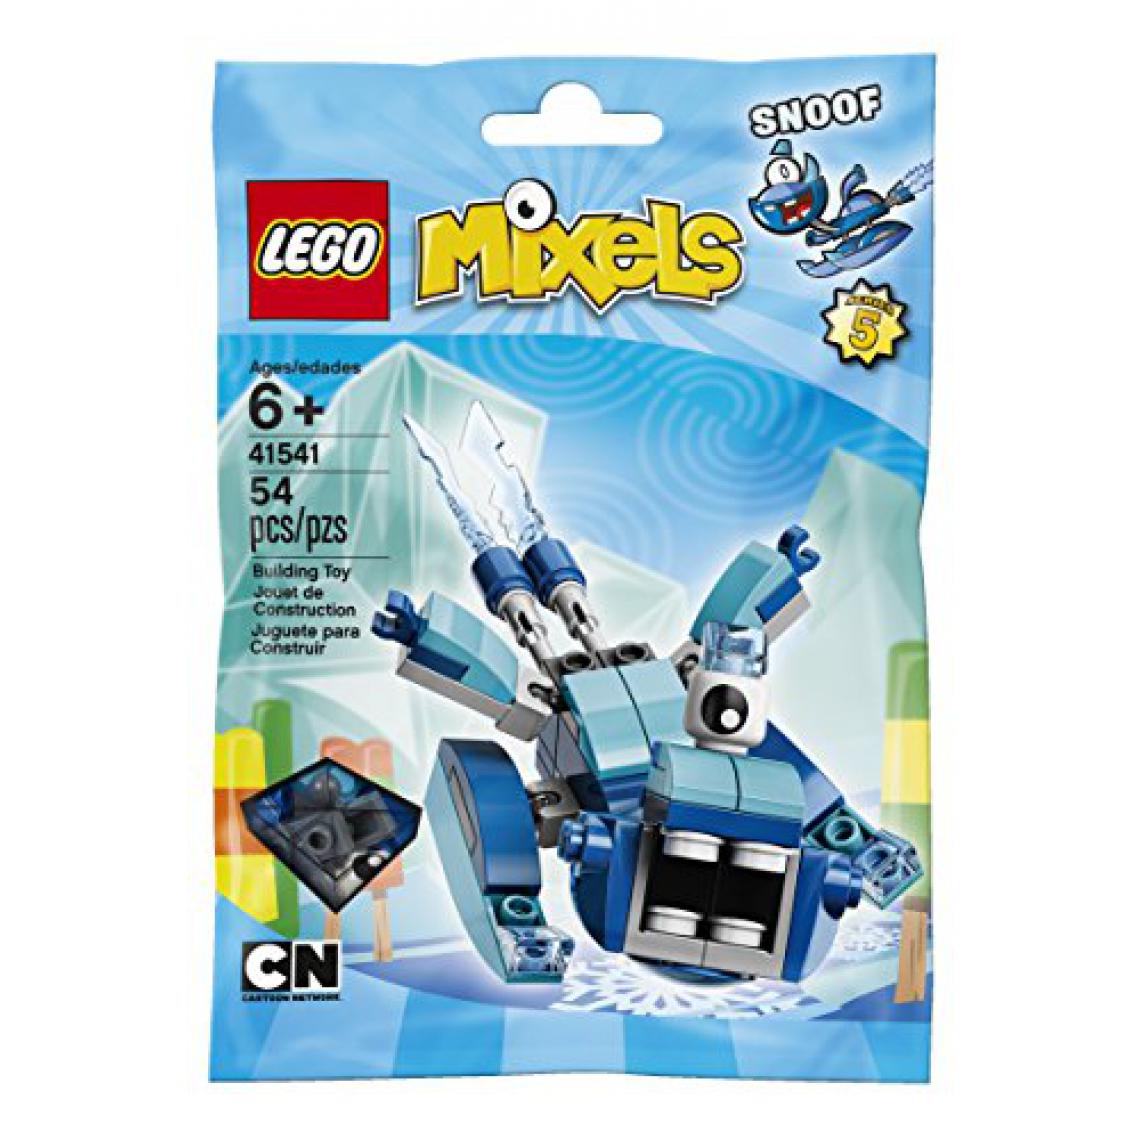 Lego - Kit de construction LEgO Mixels Series 5 Snoof (41541) - Briques et blocs